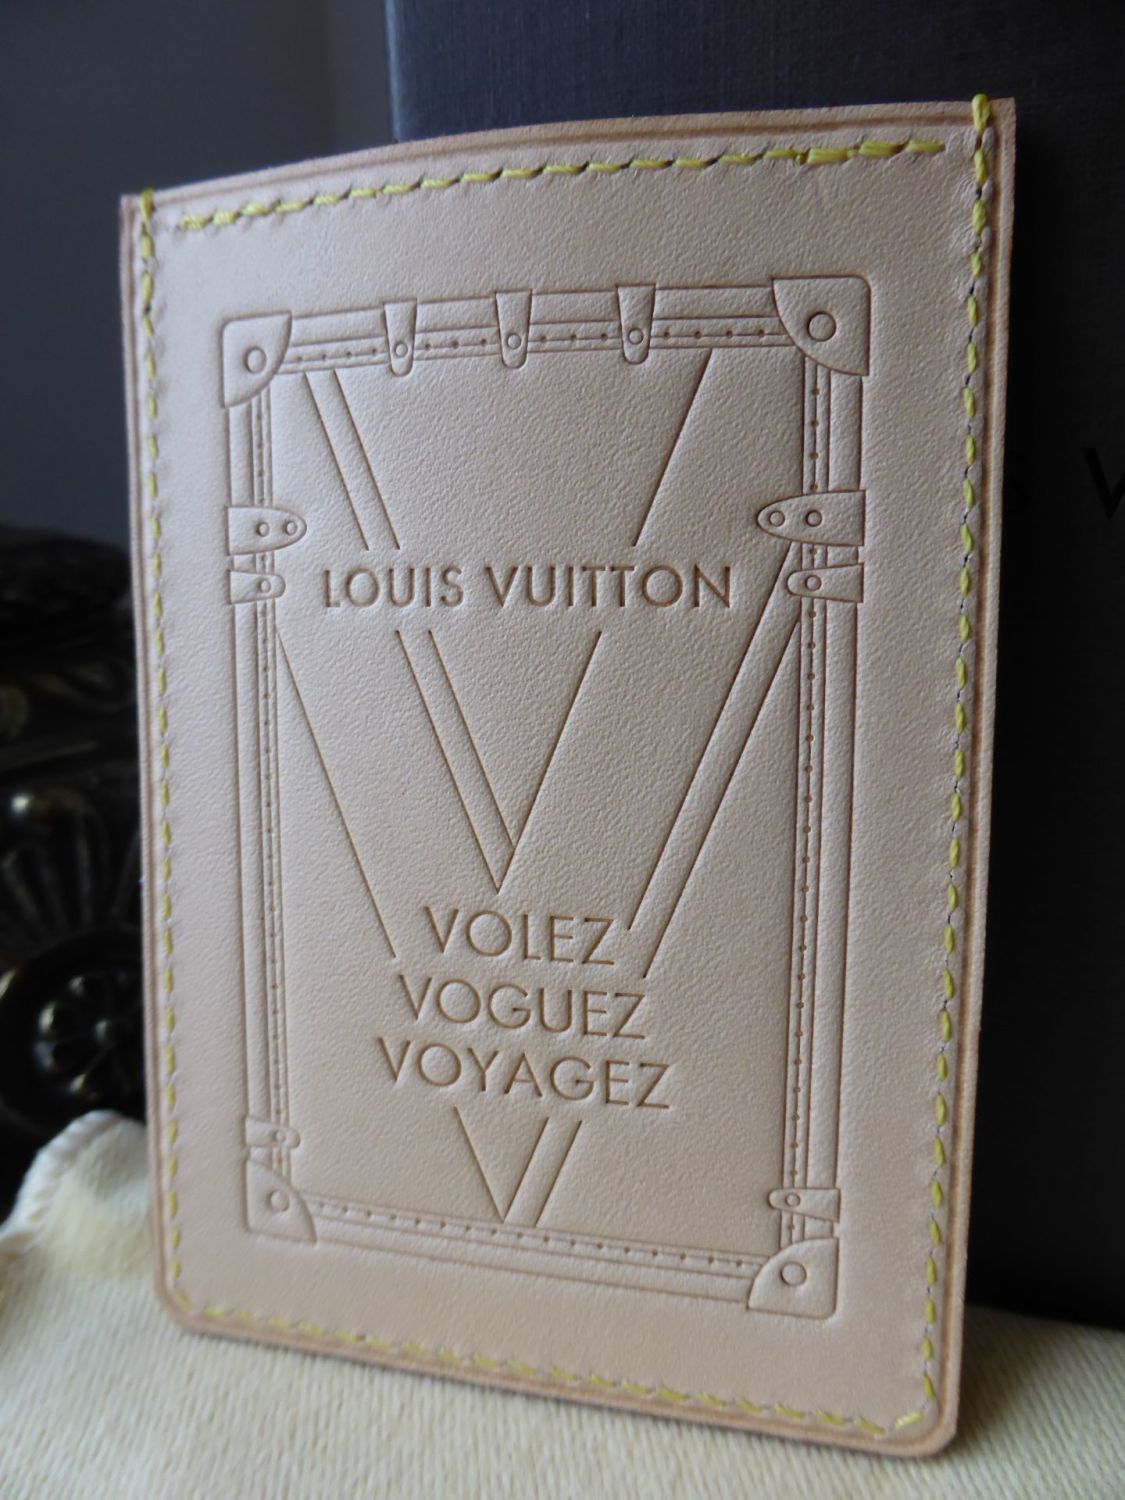 LOUIS VUITTON card holder, Volez, Voguez, Voyagez Avec Des